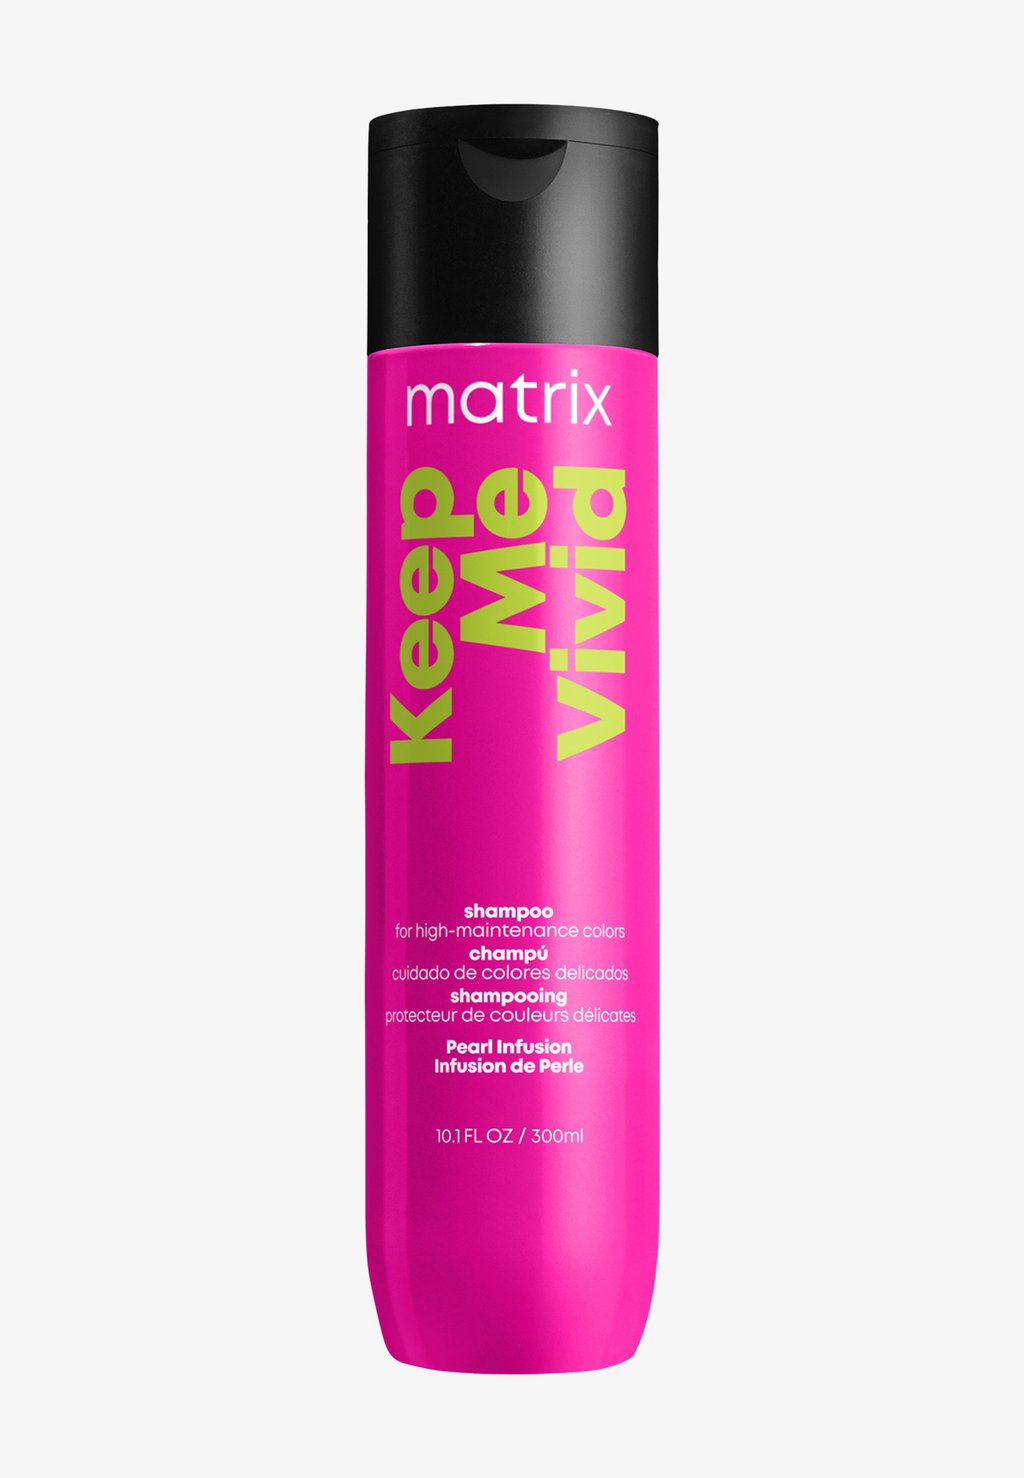 Шампунь Total Results Keep Me Vivid Shampoo Matrix шампунь для сохранения цвета ярких оттенков matrix total results keep me vivid 300 мл